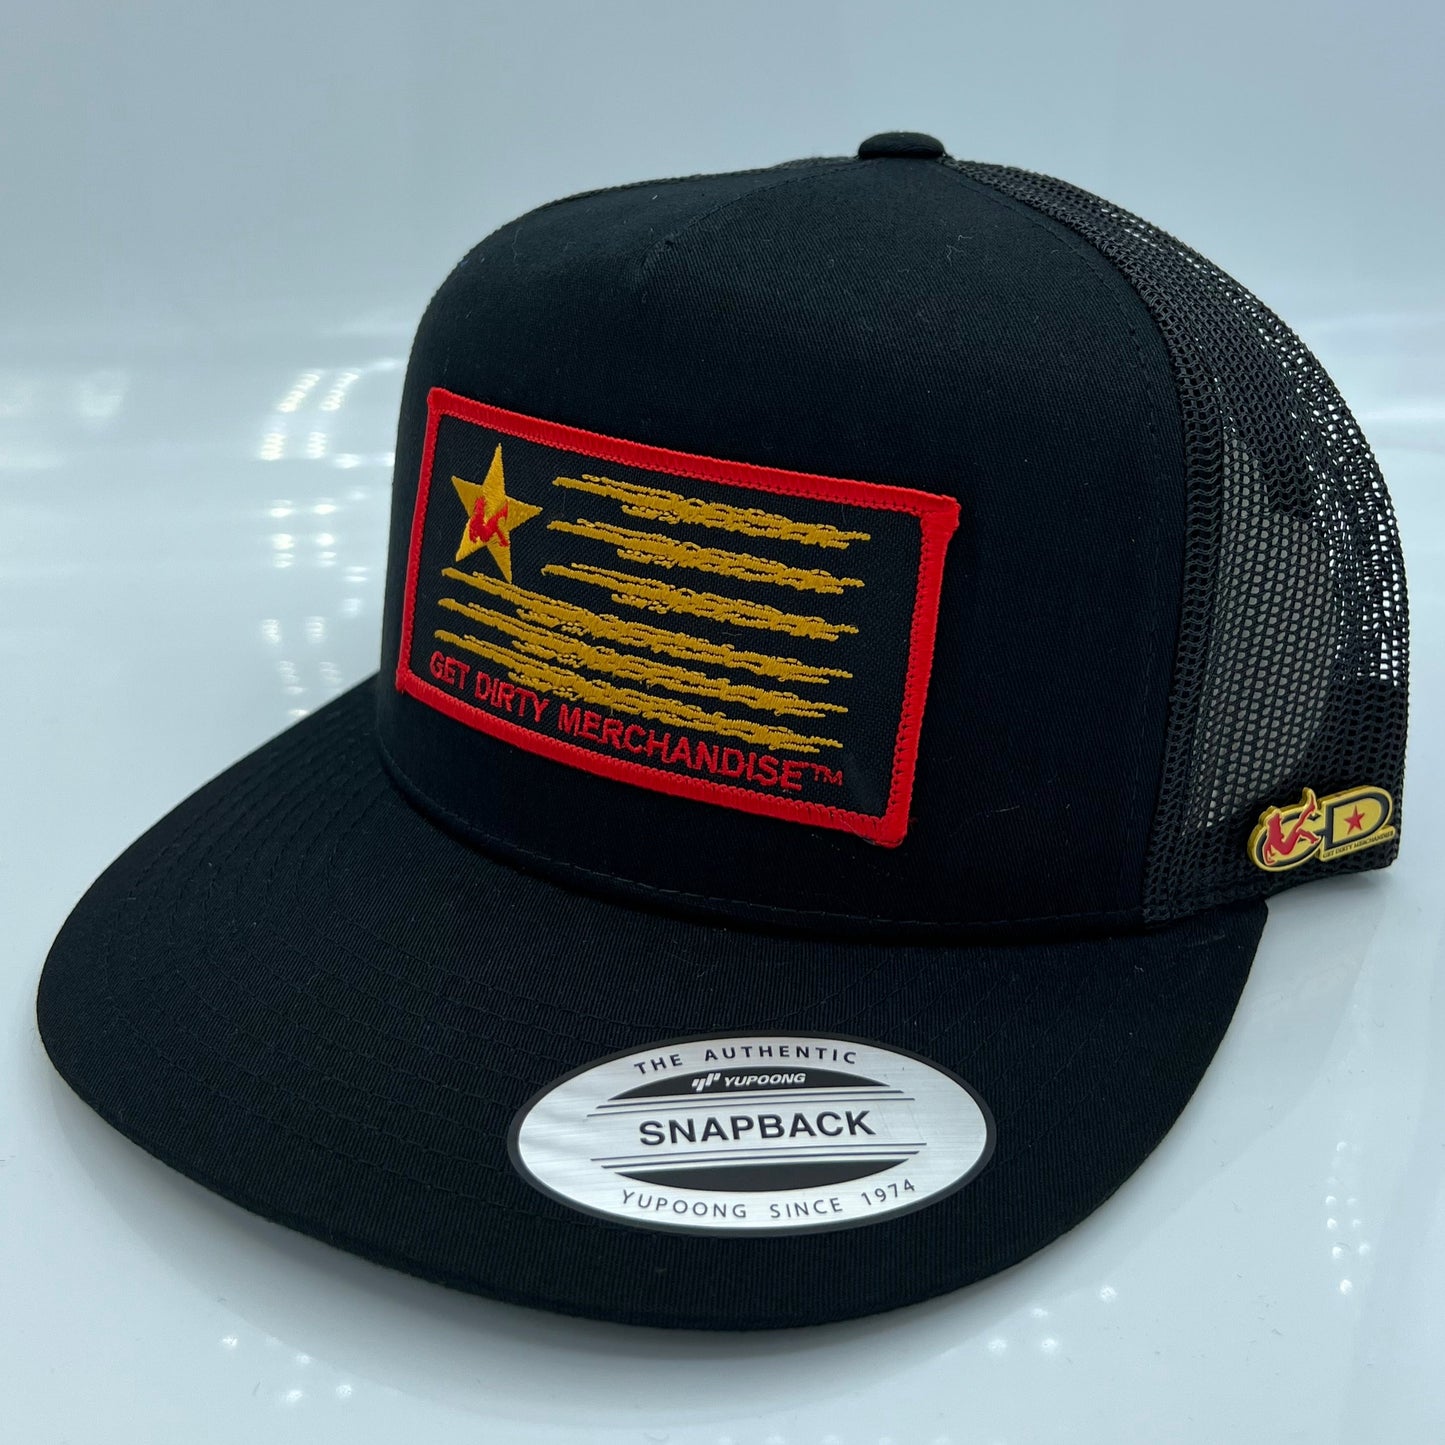 Get Dirty Merchandise BLK W&F Blk/Blk Trucker Hat